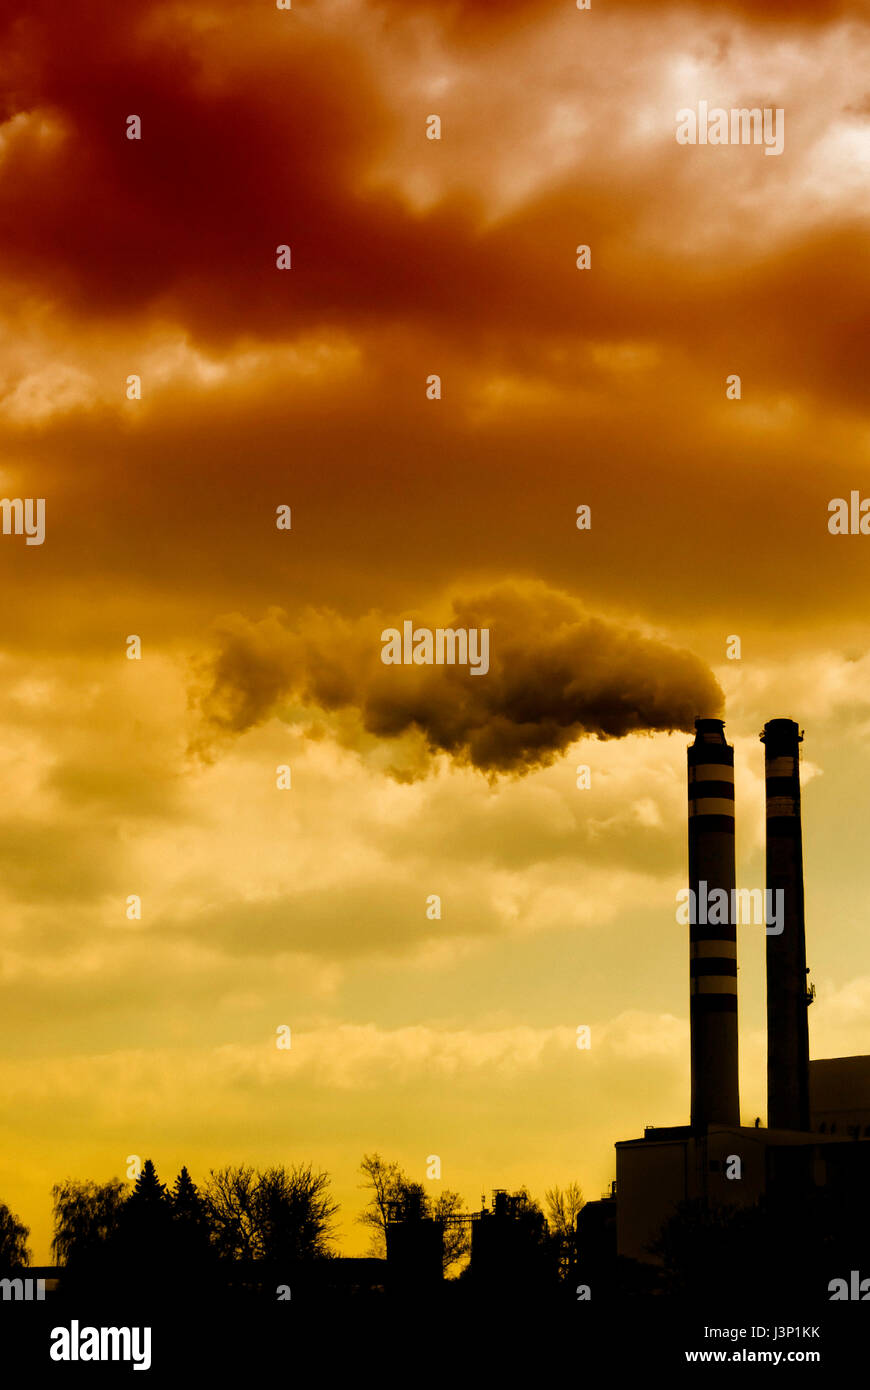 Les installations industrielles et la fumée de cheminée, polluant air concept Banque D'Images